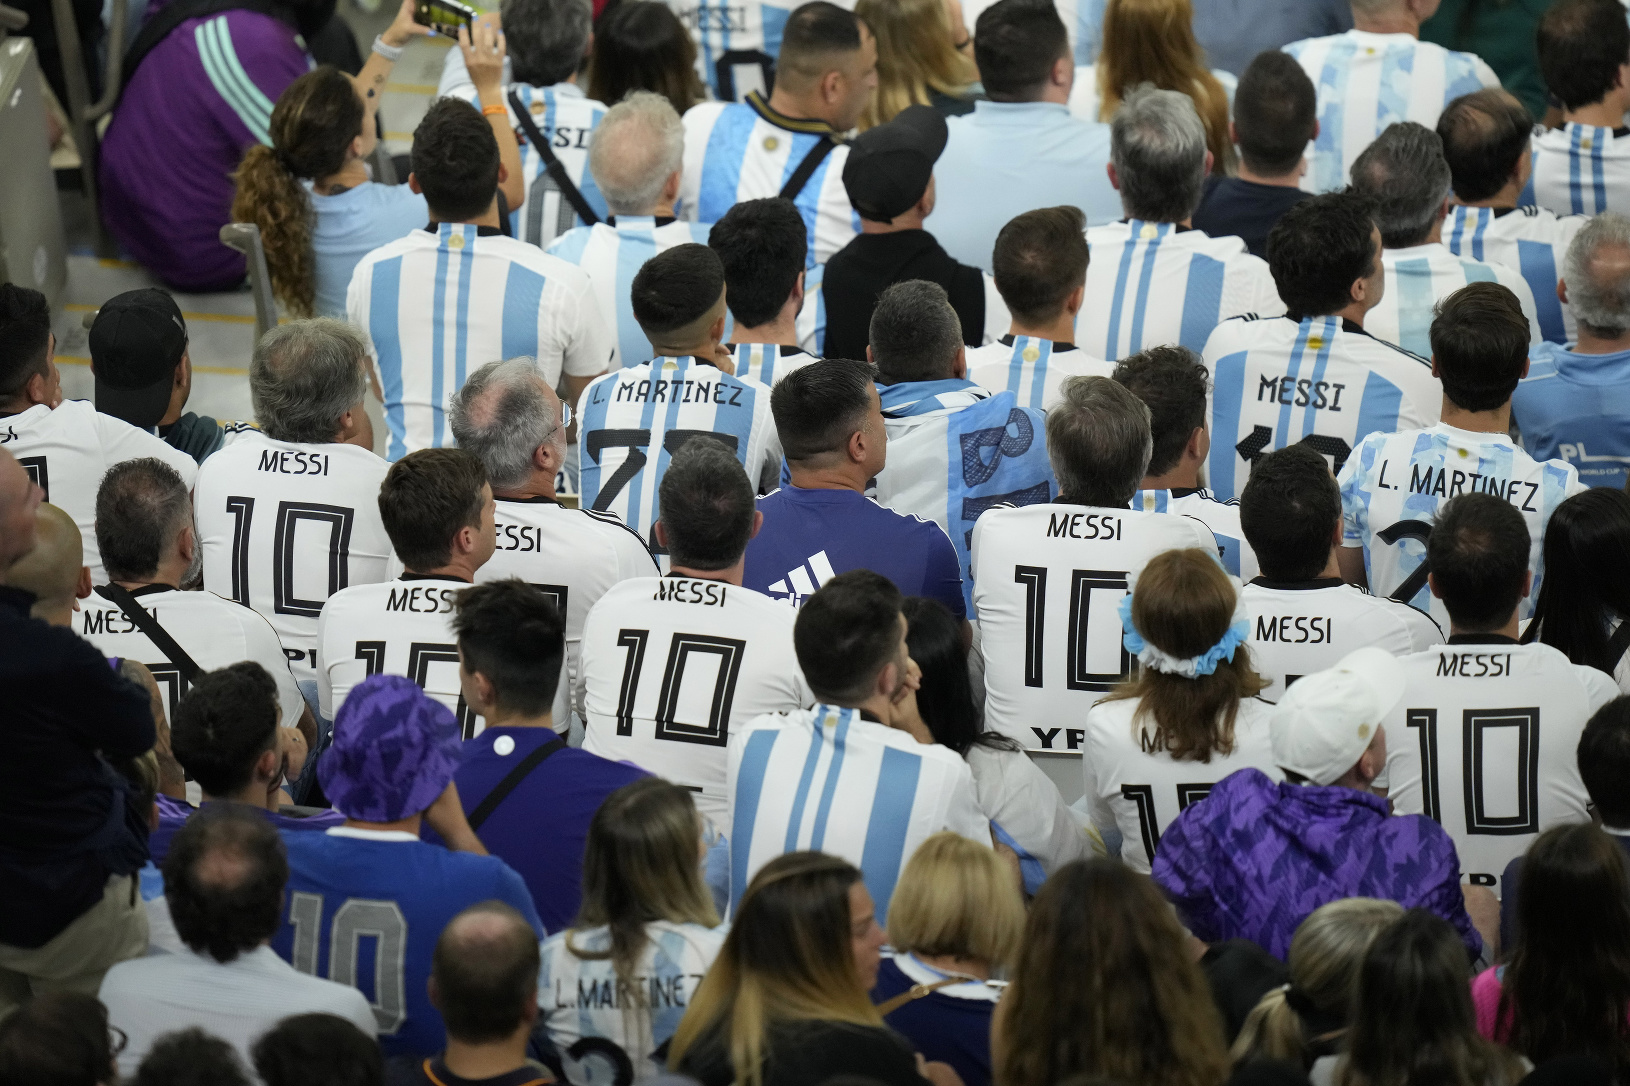 Argentínski fanúšikovia v dresoch